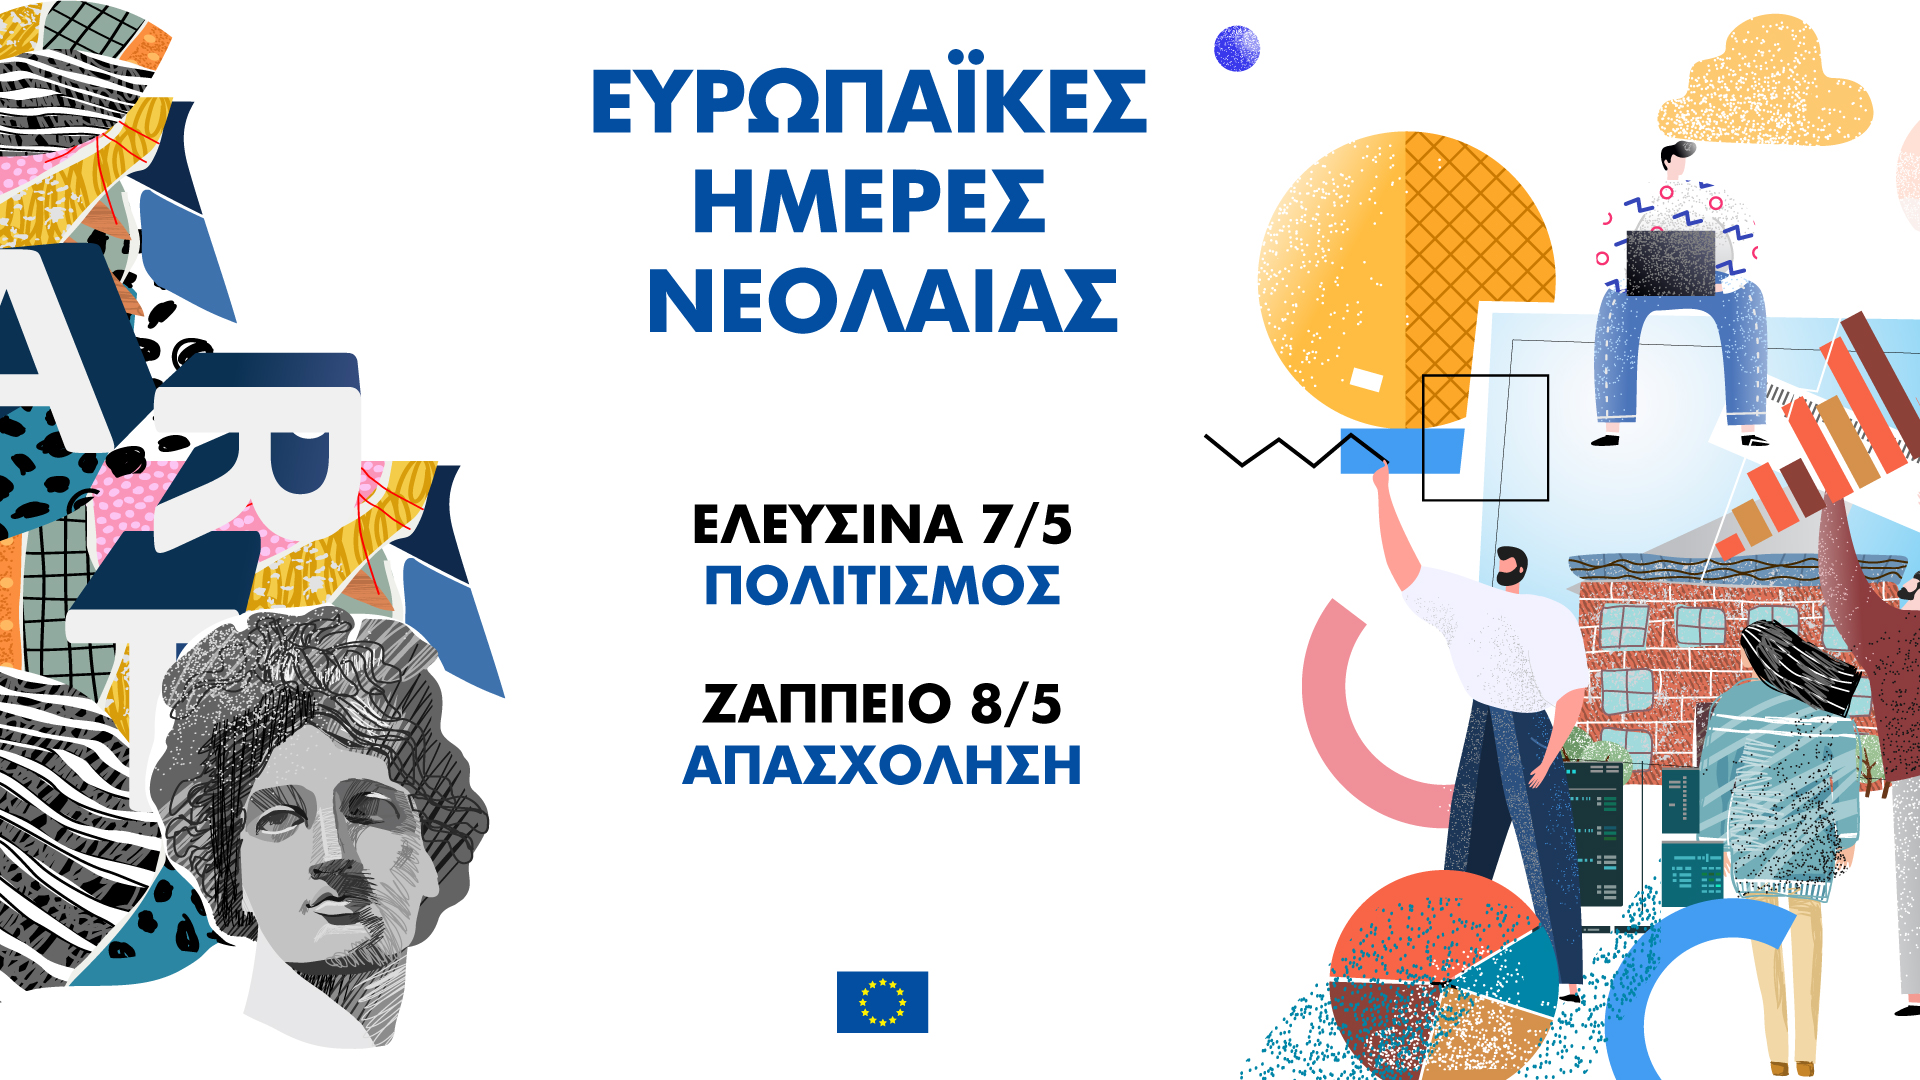 Ημέρα της Ευρώπης: Ραντεβού σε Ελευσίνα και Ζάππειο για τις Ευρωπαϊκές Ημέρες Νεολαίας